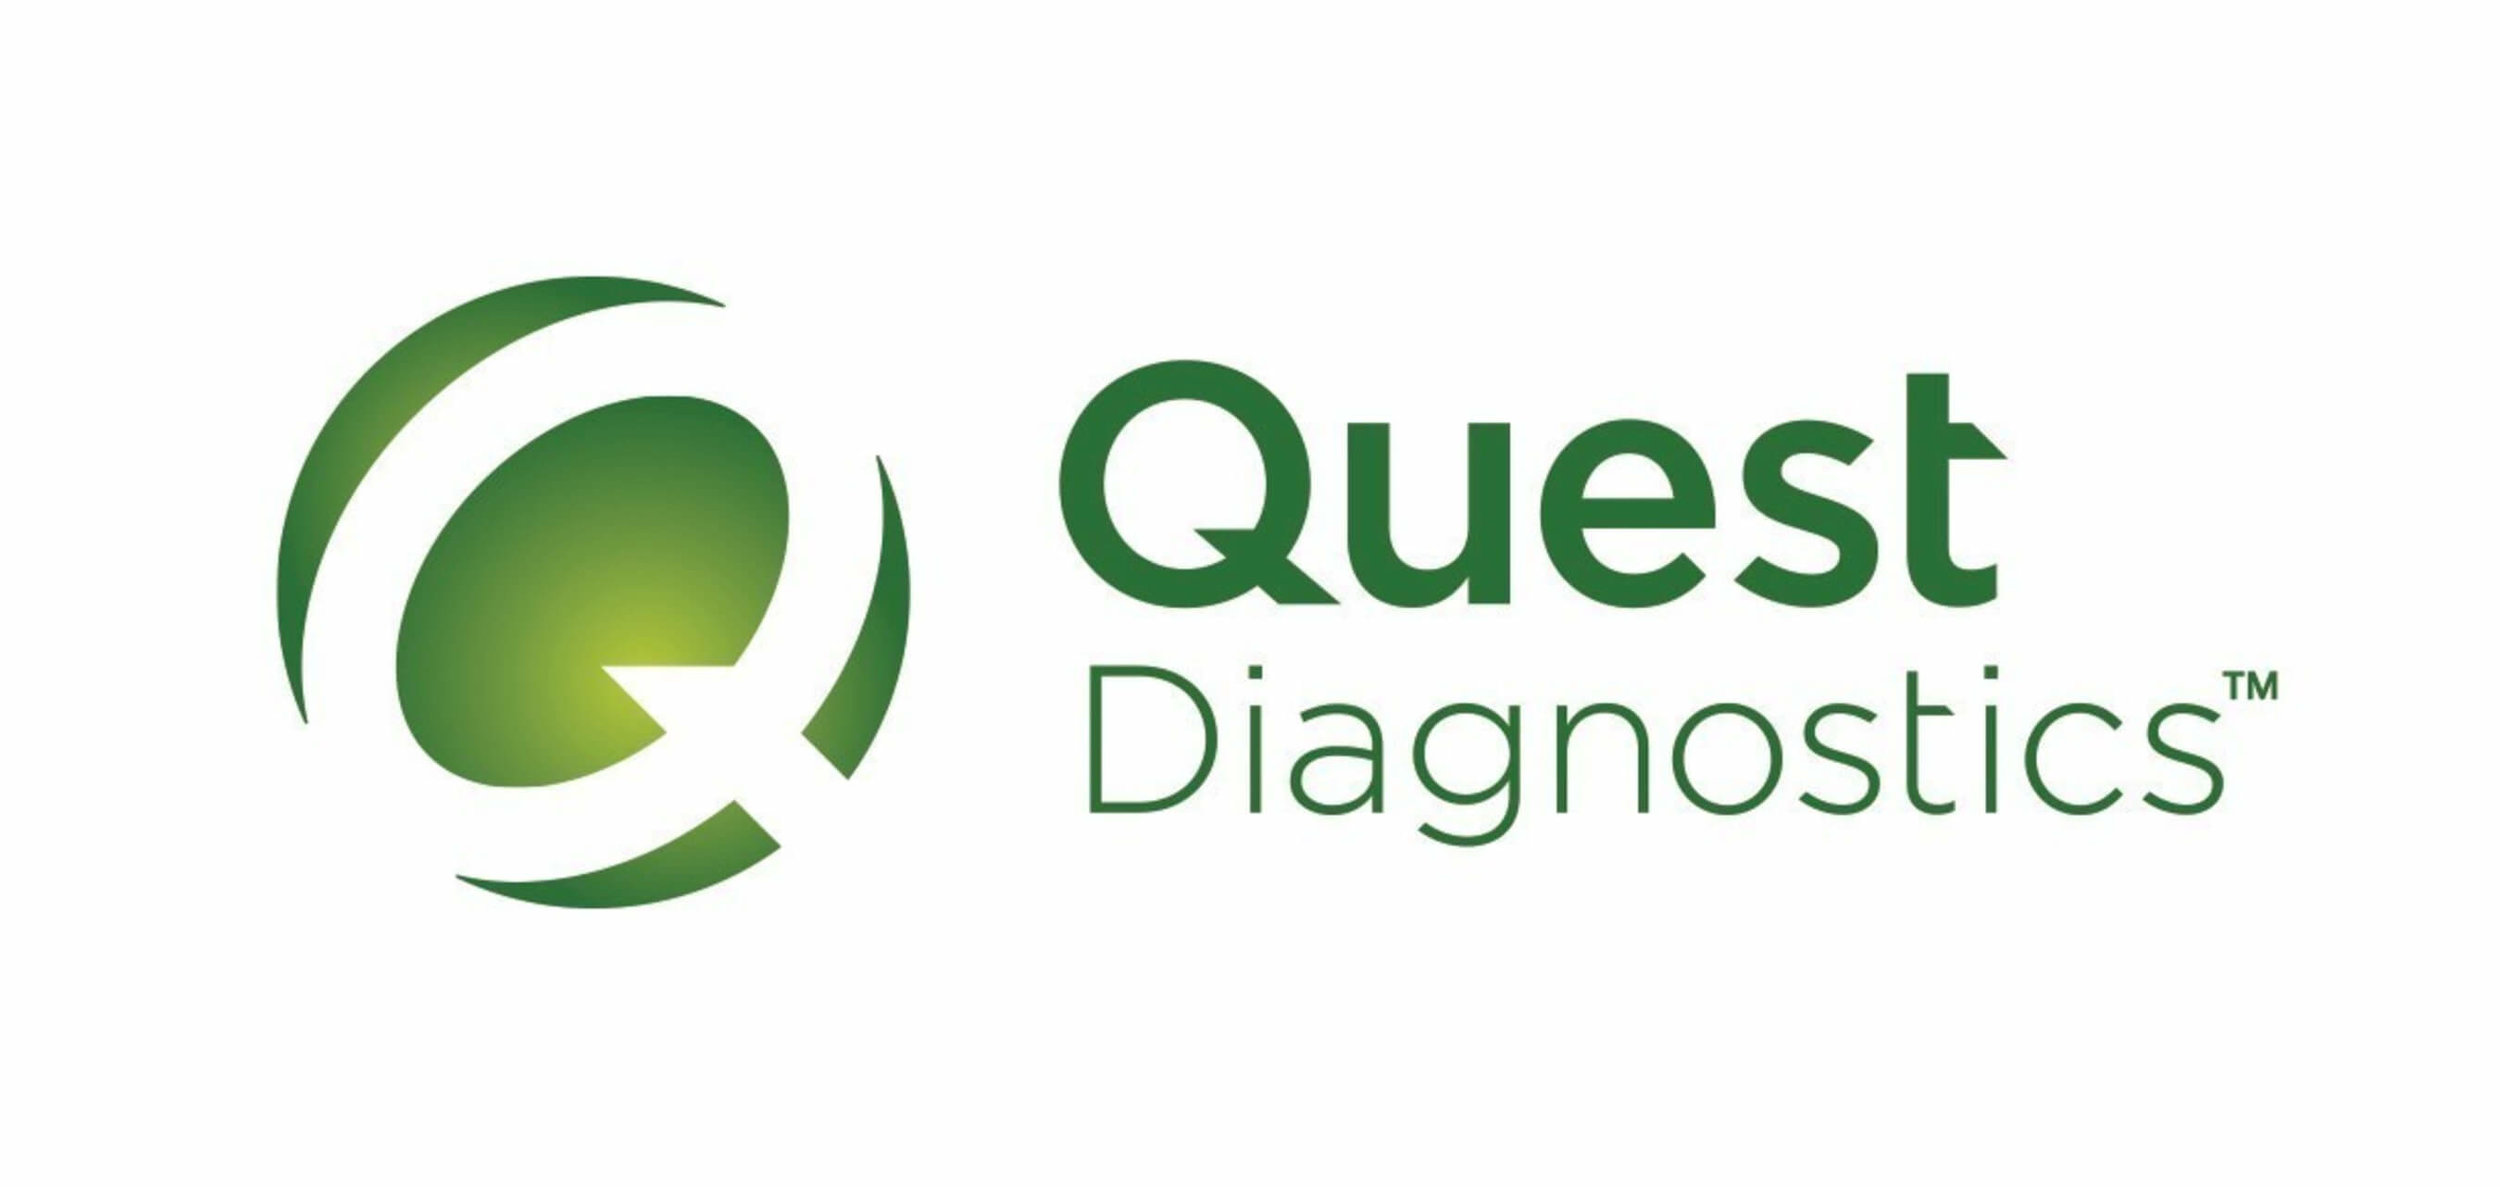 5900_health_quest_diagnostics_resources.jpeg